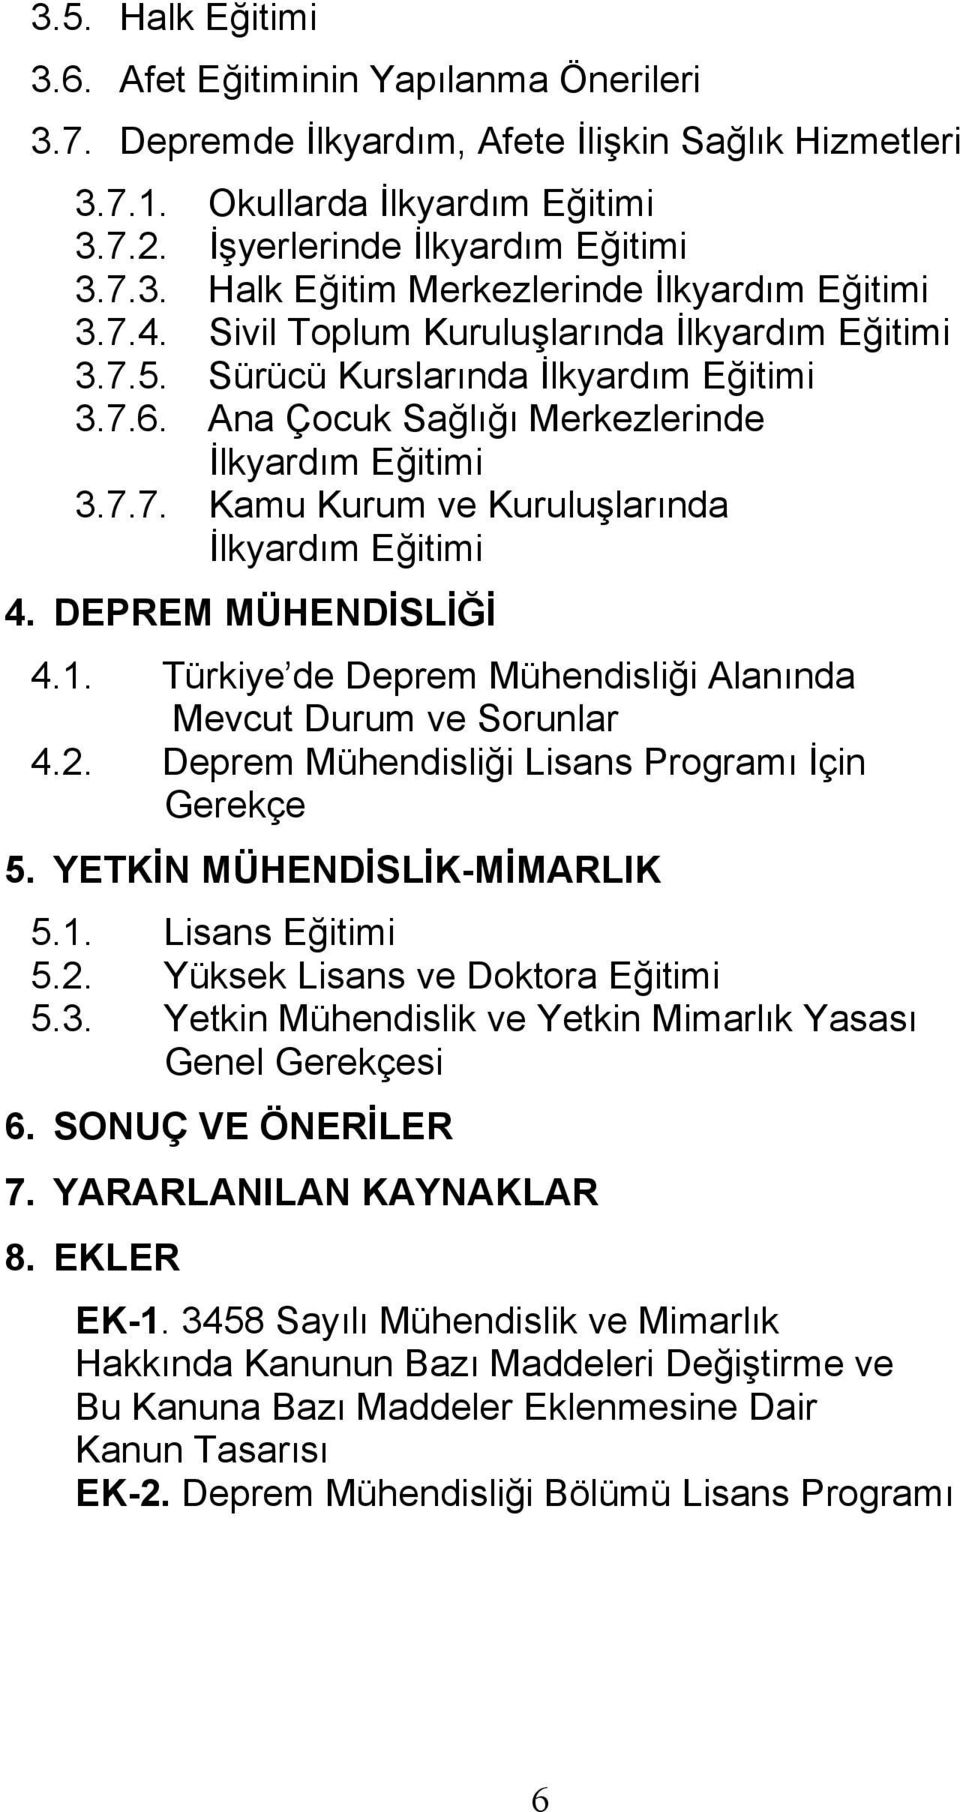 DEPREM MÜHENDİSLİĞİ 4.1. Türkiye de Deprem Mühendisliği Alanında Mevcut Durum ve Sorunlar 4.2. Deprem Mühendisliği Lisans Programı İçin Gerekçe 5. YETKİN MÜHENDİSLİK-MİMARLIK 5.1. Lisans Eğitimi 5.2. Yüksek Lisans ve Doktora Eğitimi 5.